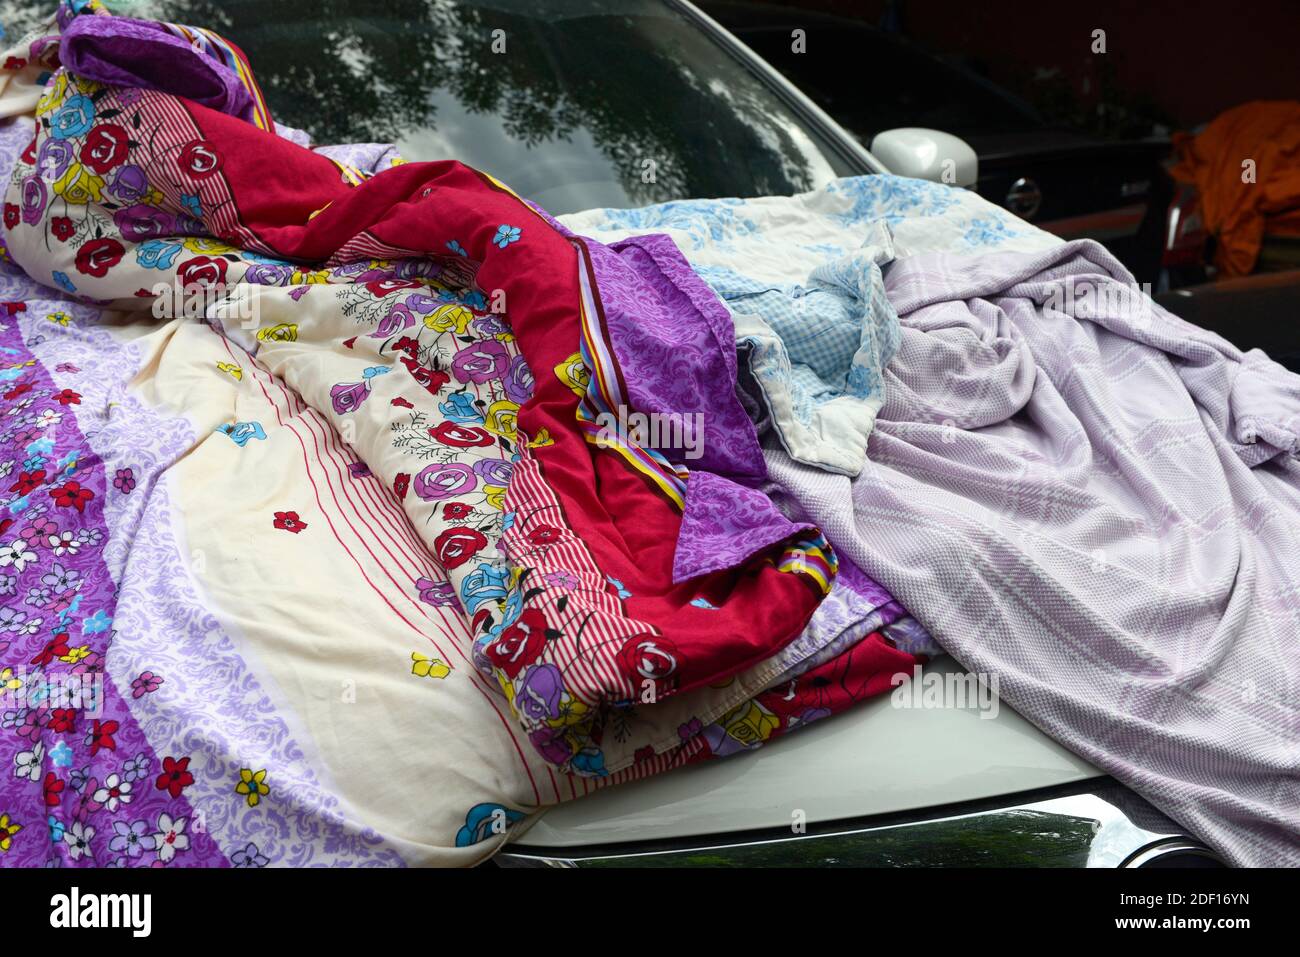 Un capot de voiture recouvert de vêtements et de couvertures dans l'ouest de Beijing, en Chine Banque D'Images